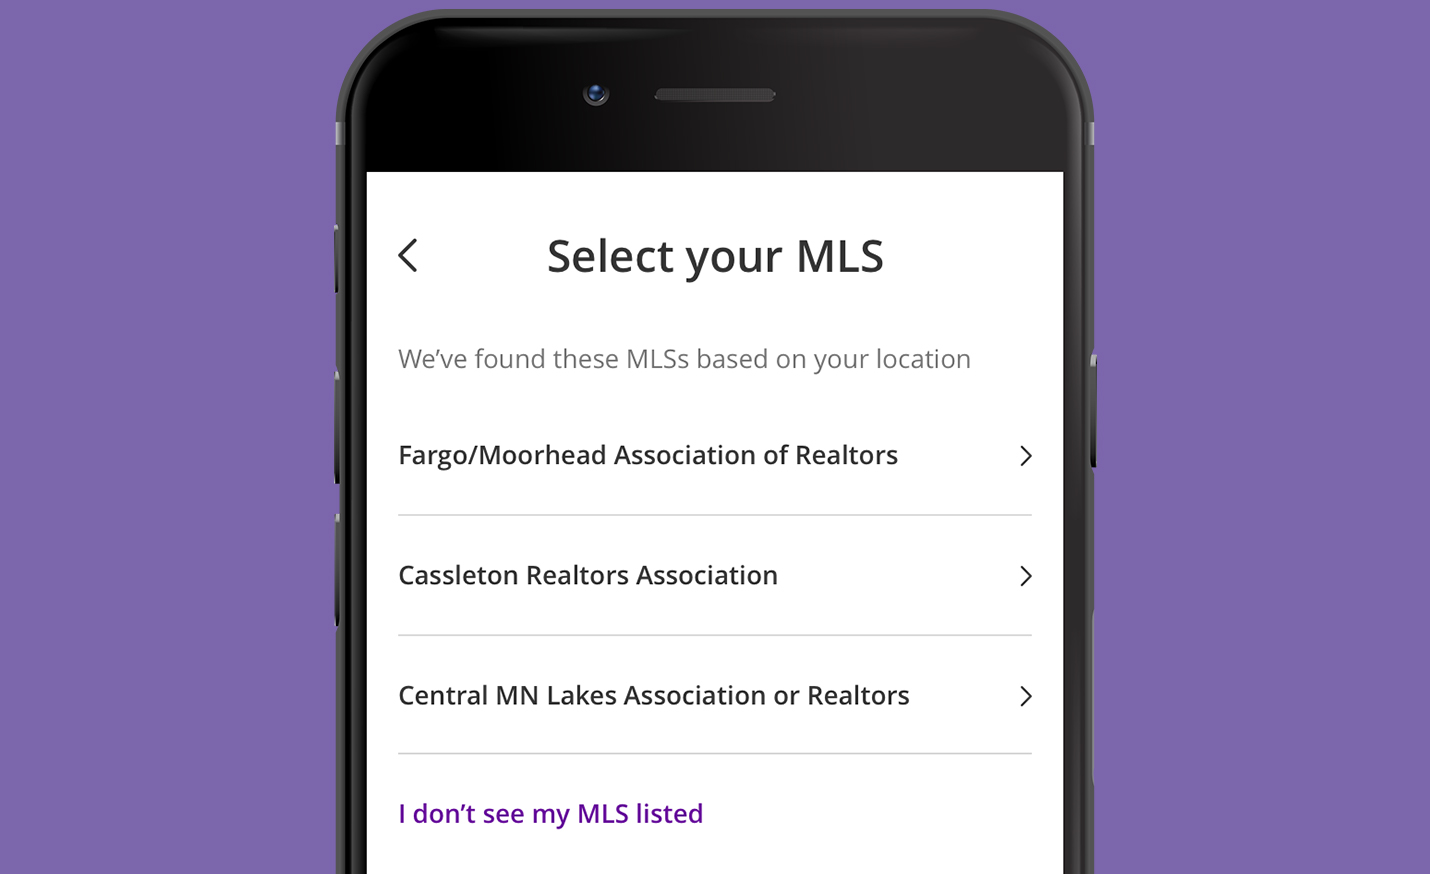 login - choose your MLS